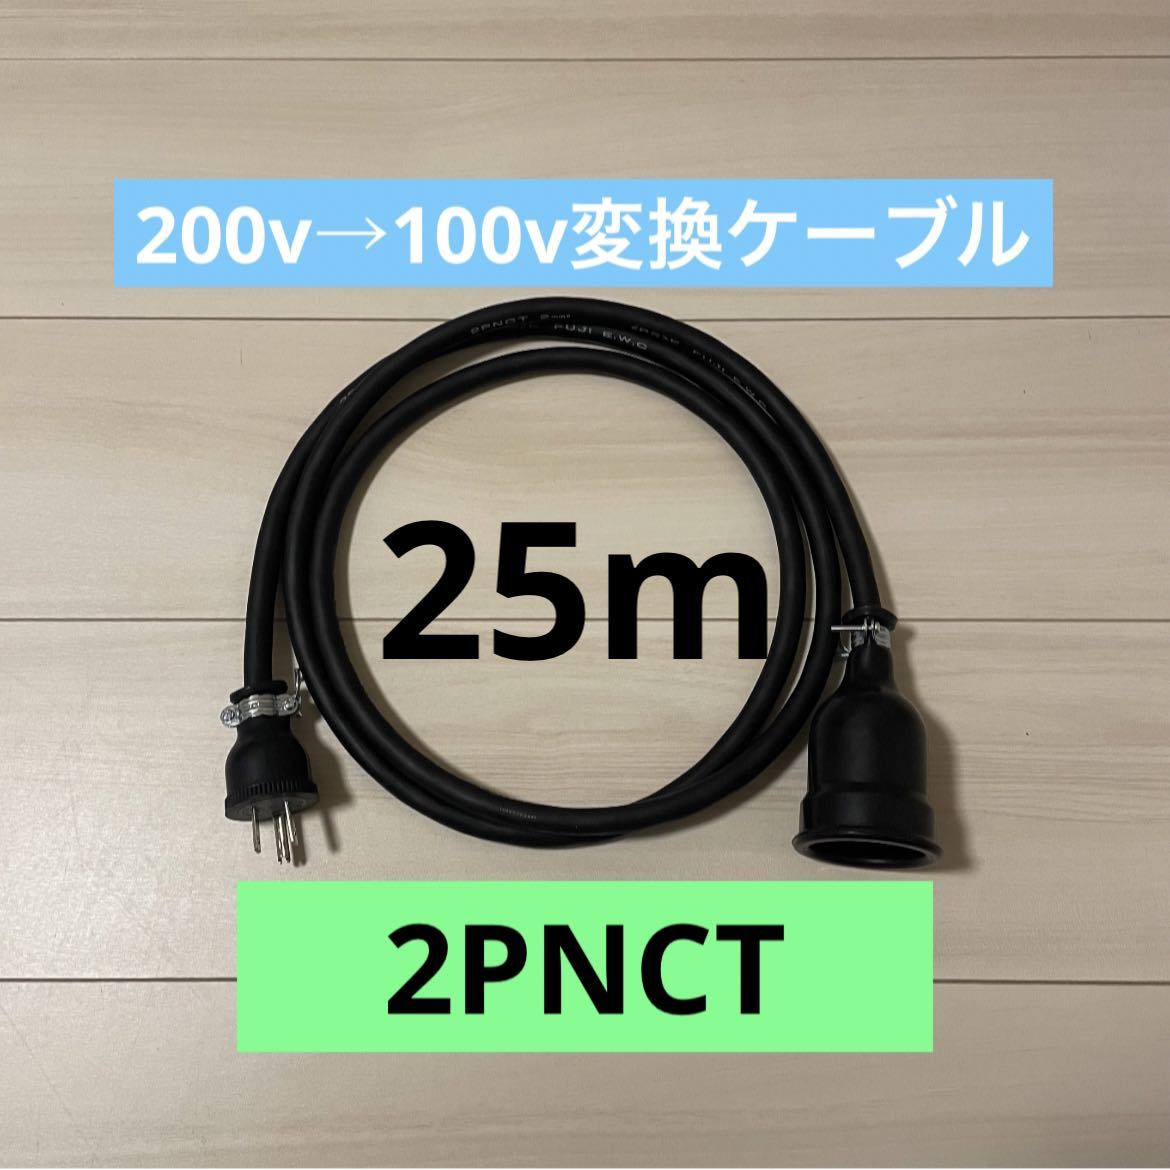 電気自動車コンセント★200V→100V変換充電器延長ケーブル25m 2PNCT